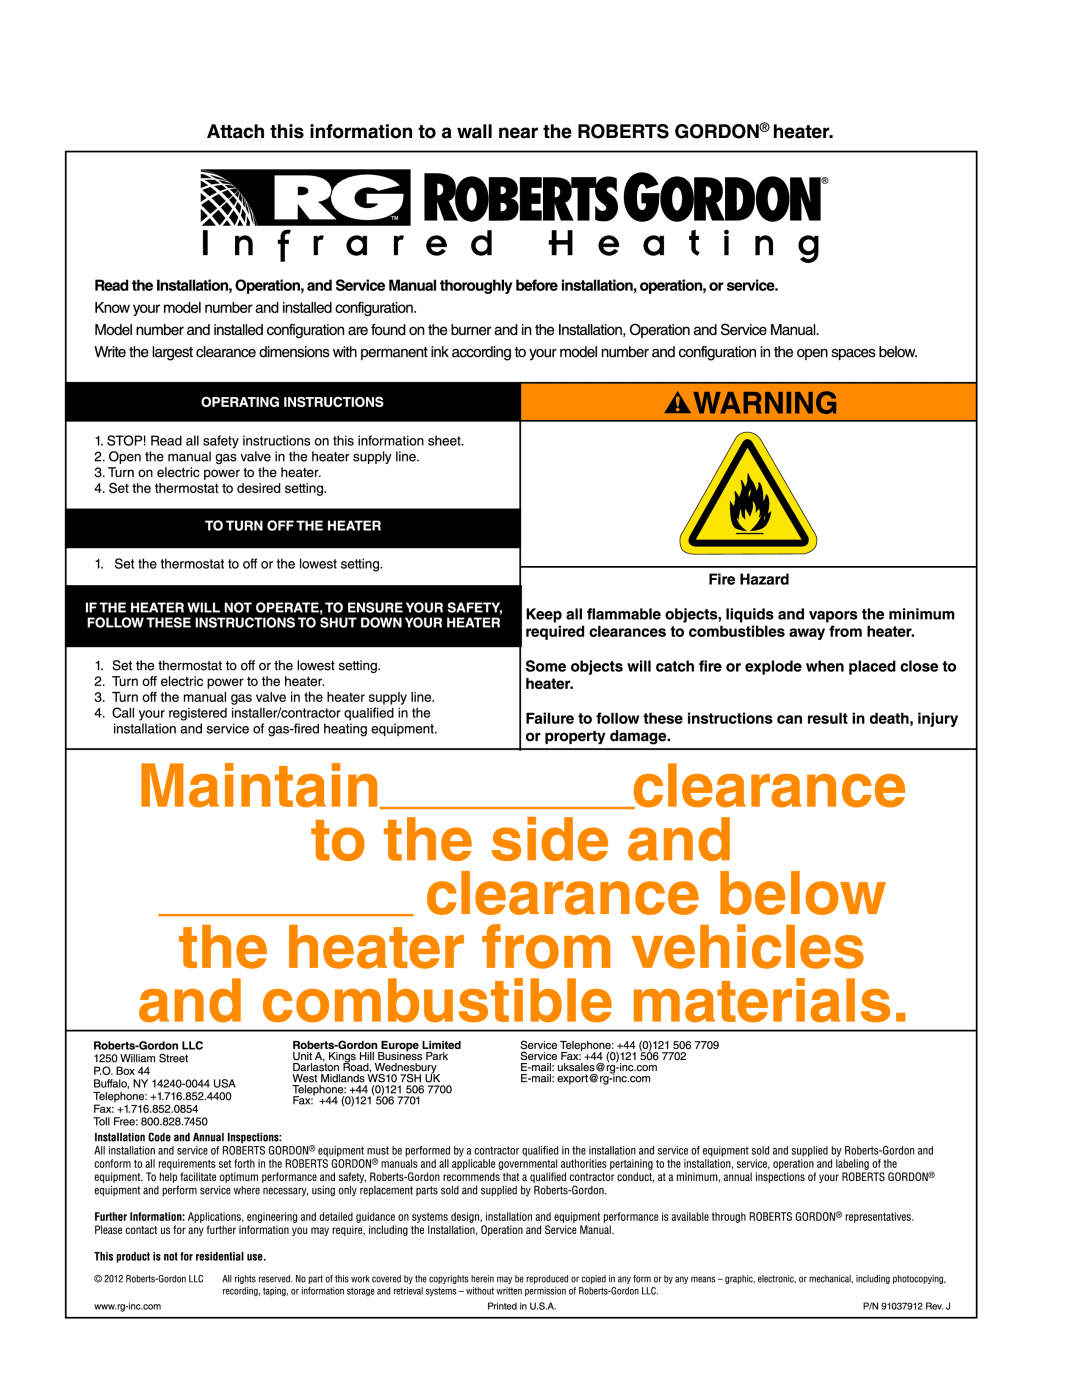 Roberts Gorden TF-120, TF-350, TF-300, TF-200, TF-160, TF-250, TF-380 service manual 